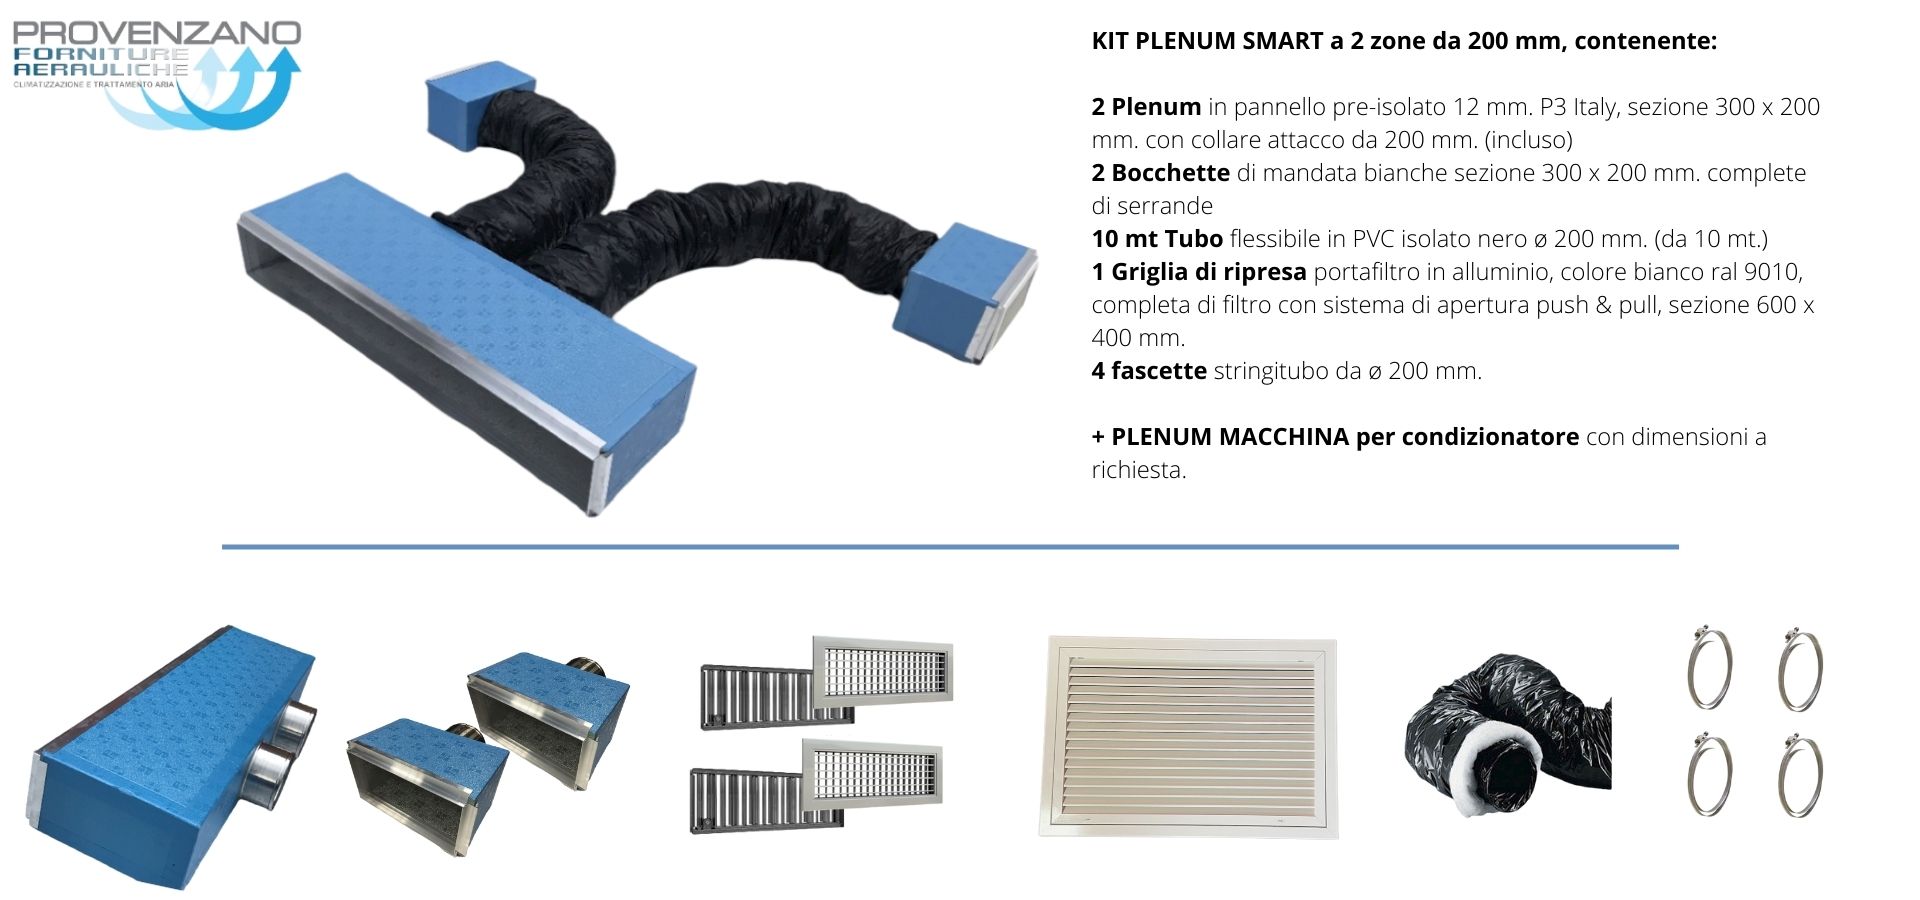 Kit PLENUM SMART a 2 zone da 200 mm + Plenum macchina con attacco per distribuzione aria condizionata